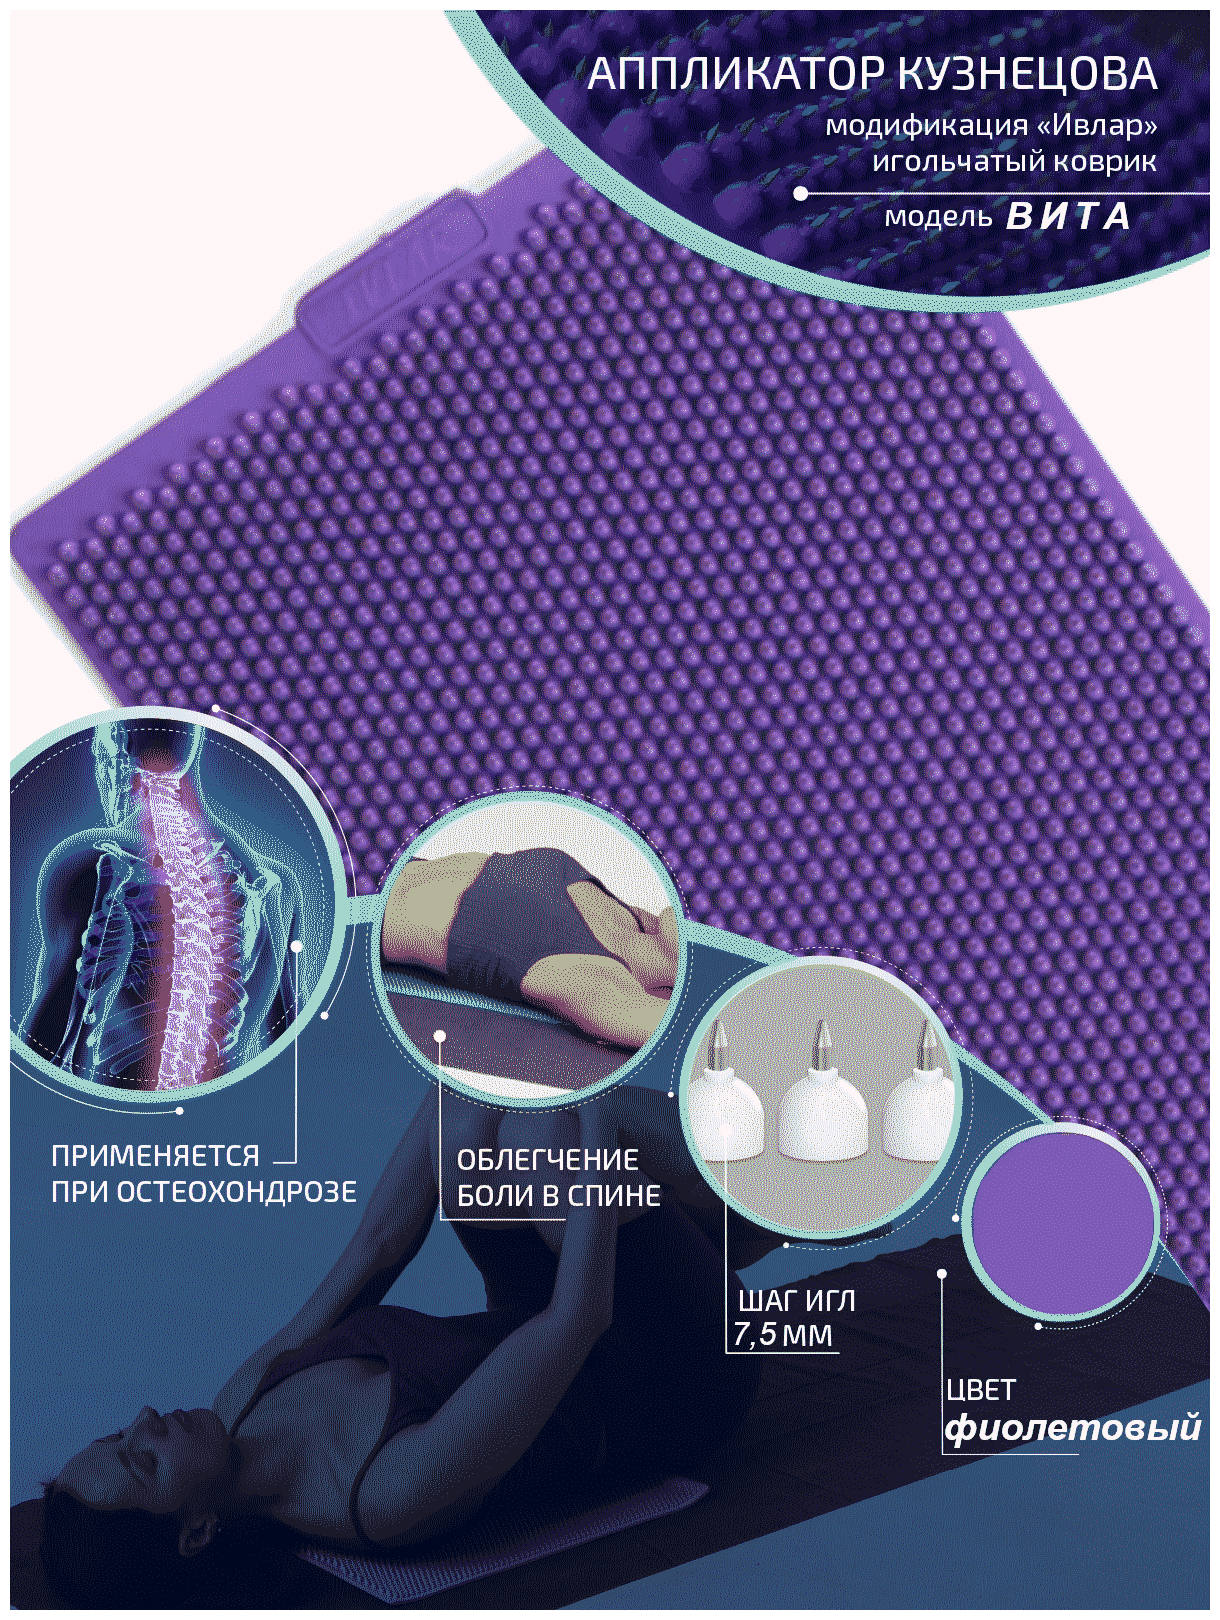 Аппликатор Кузнецова с металлическими иглами ивлар вита, размер 480х240 мм, цвет фиолетовый, шаг игл 7.5 мм